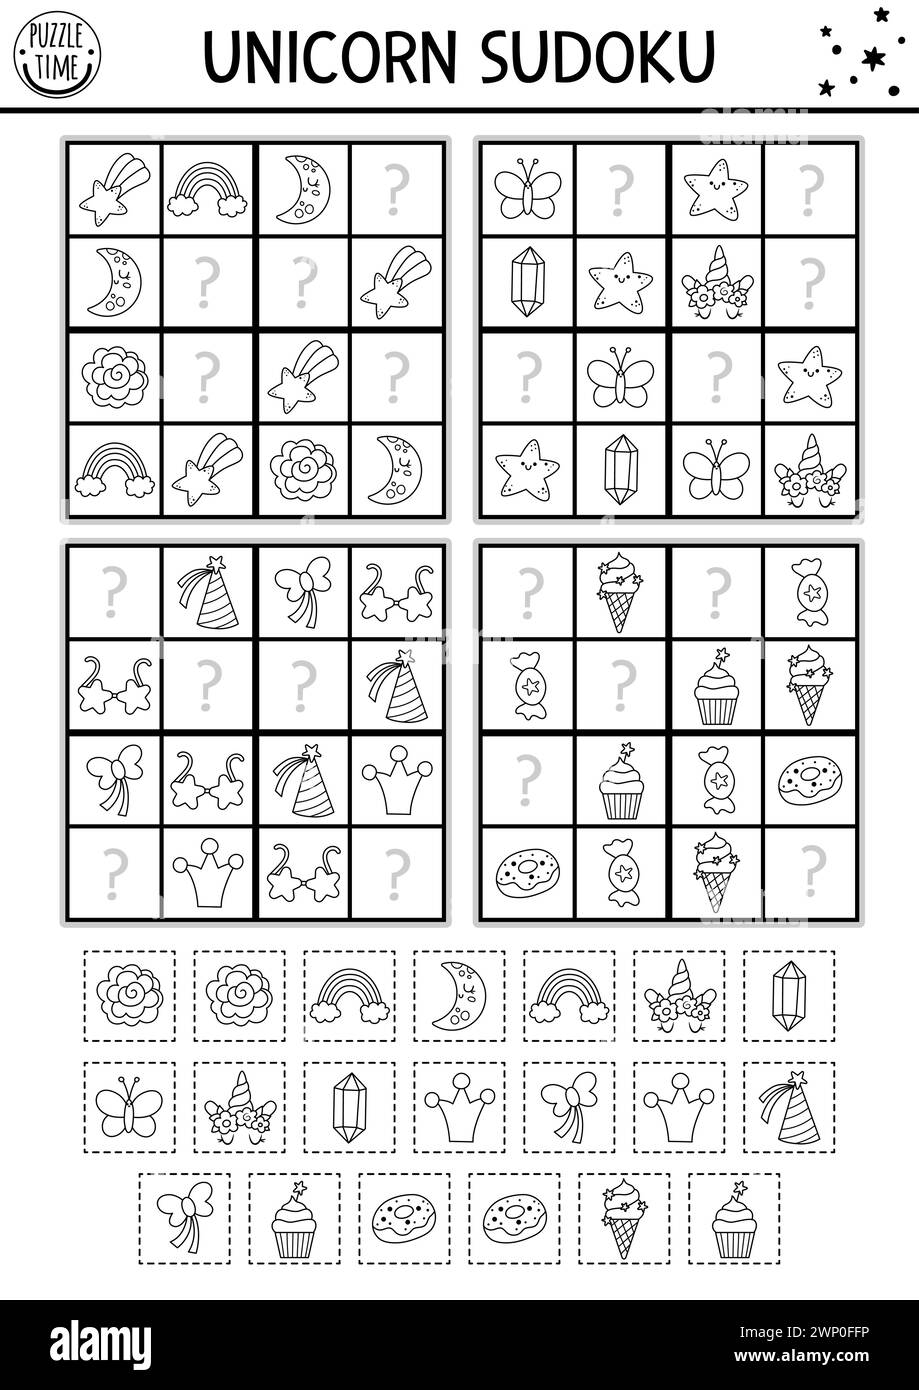 Vektor schwarz-weiß Einhorn Sudoku Puzzle für Kinder. Märchenhaftes Quiz mit Schnitt- und Klebeelementen. Bildungsaktivität oder Ausmalseite mit Regenbogen, cr Stock Vektor